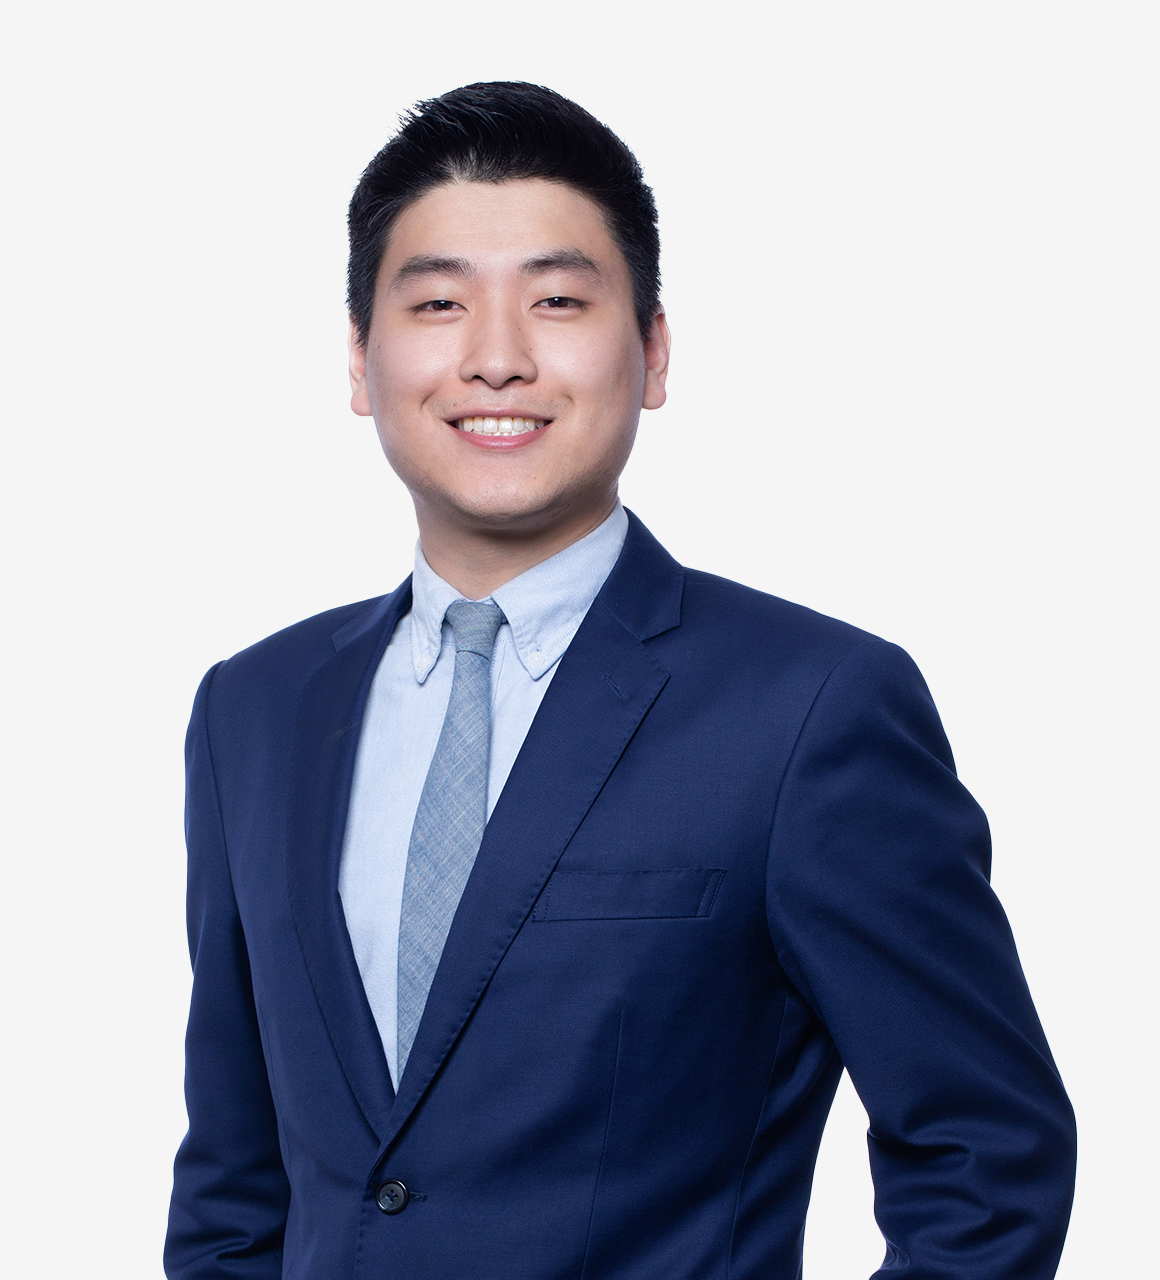 Noah M. Woo, Associate at ArentFox Schiff LLP